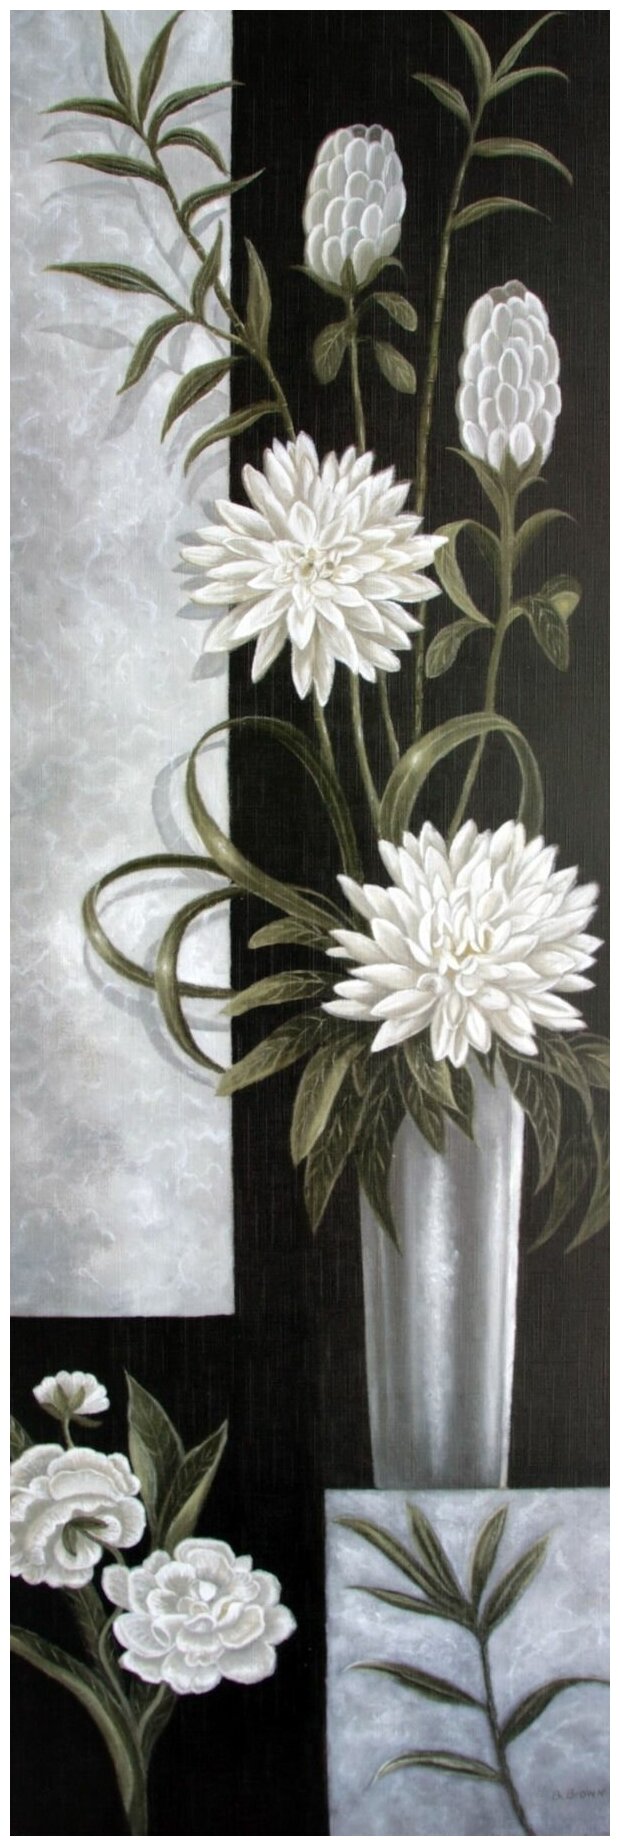 Постер на холсте Цветы (Flowers) №26 30см. x 91см.